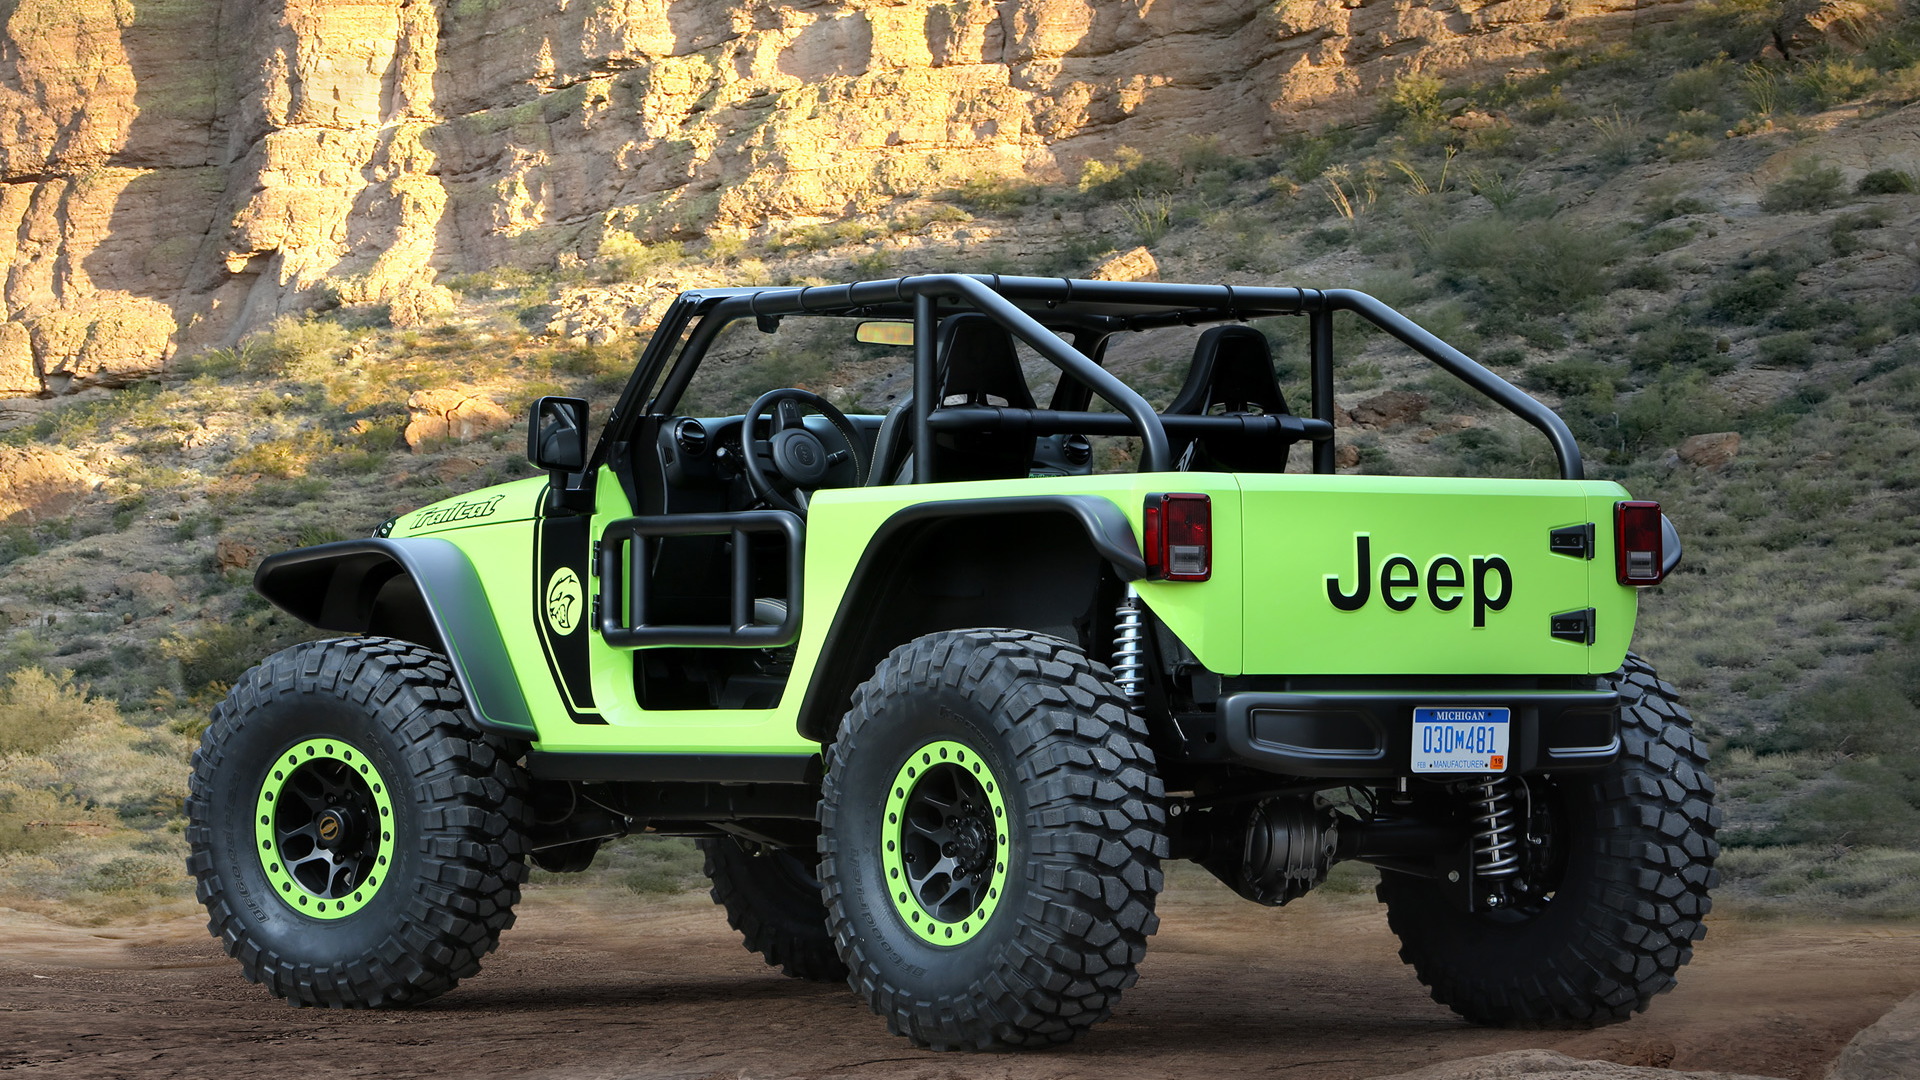 Jeep Trailcat concept, 2016 Easter Jeep Safari